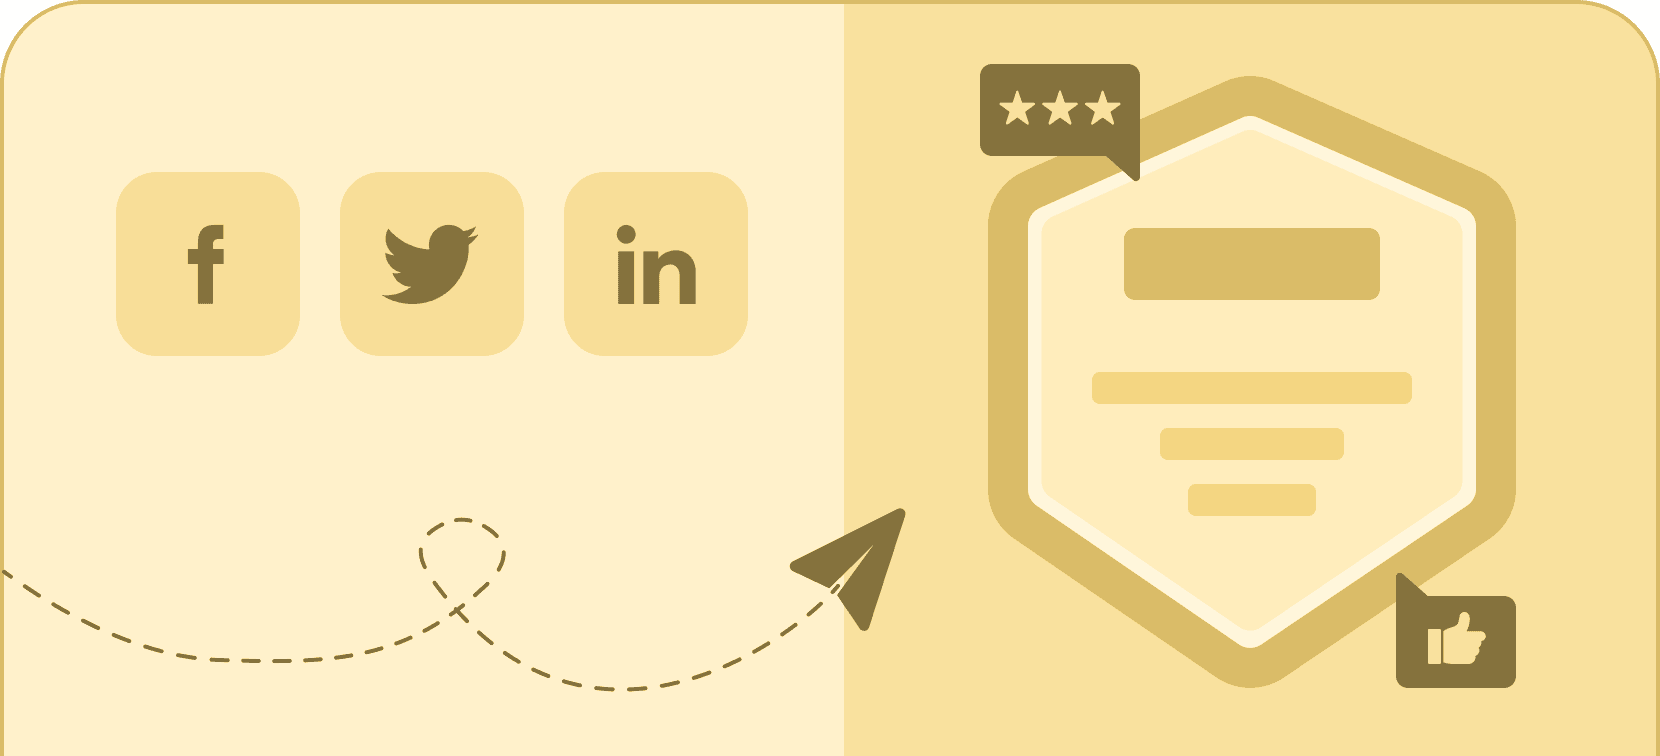 Social media buttons - Certifier features